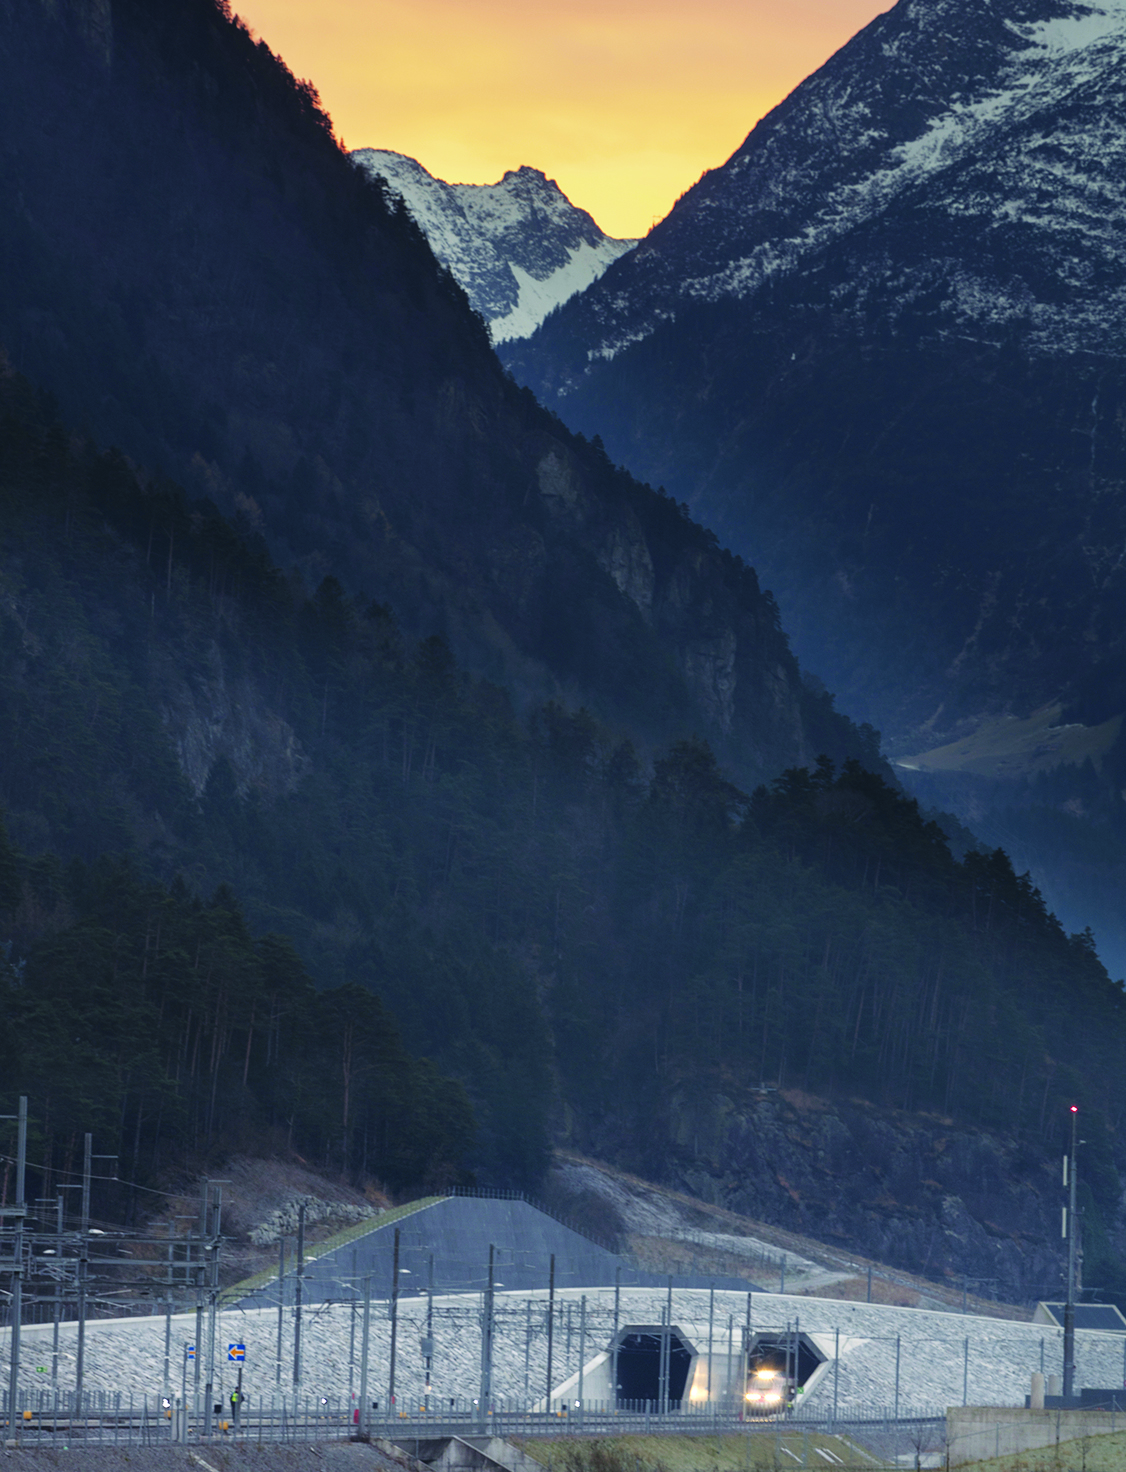 ARCHIVBILD ZUR BILANZ DER SBB UEBER DEN BETRIEB DES GOTTHARD-BASISTUNNELS, AM FREITAG, 5. MAI 2017 - Ein Personenzug der SBB faehrt aus dem Nordportal des Gotthard-Basistunnels in Richtung Norden, aufgenommen am Sonntag, 11. Dezember 2016, in Erstfeld. Der heutige 11. Dezember ist ein besonderer Tag fuer die Schweiz: Nach 17 Jahren Bauzeit wird der Gotthard-Basistunnel, mit 57 Kilometern der laengste Tunnel der Welt, feierlich in den regulaeren Fahrplan aufgenommen. (KEYSTONE/Gaetan Bally) *** NO SALES, NO ARCHIVES ***